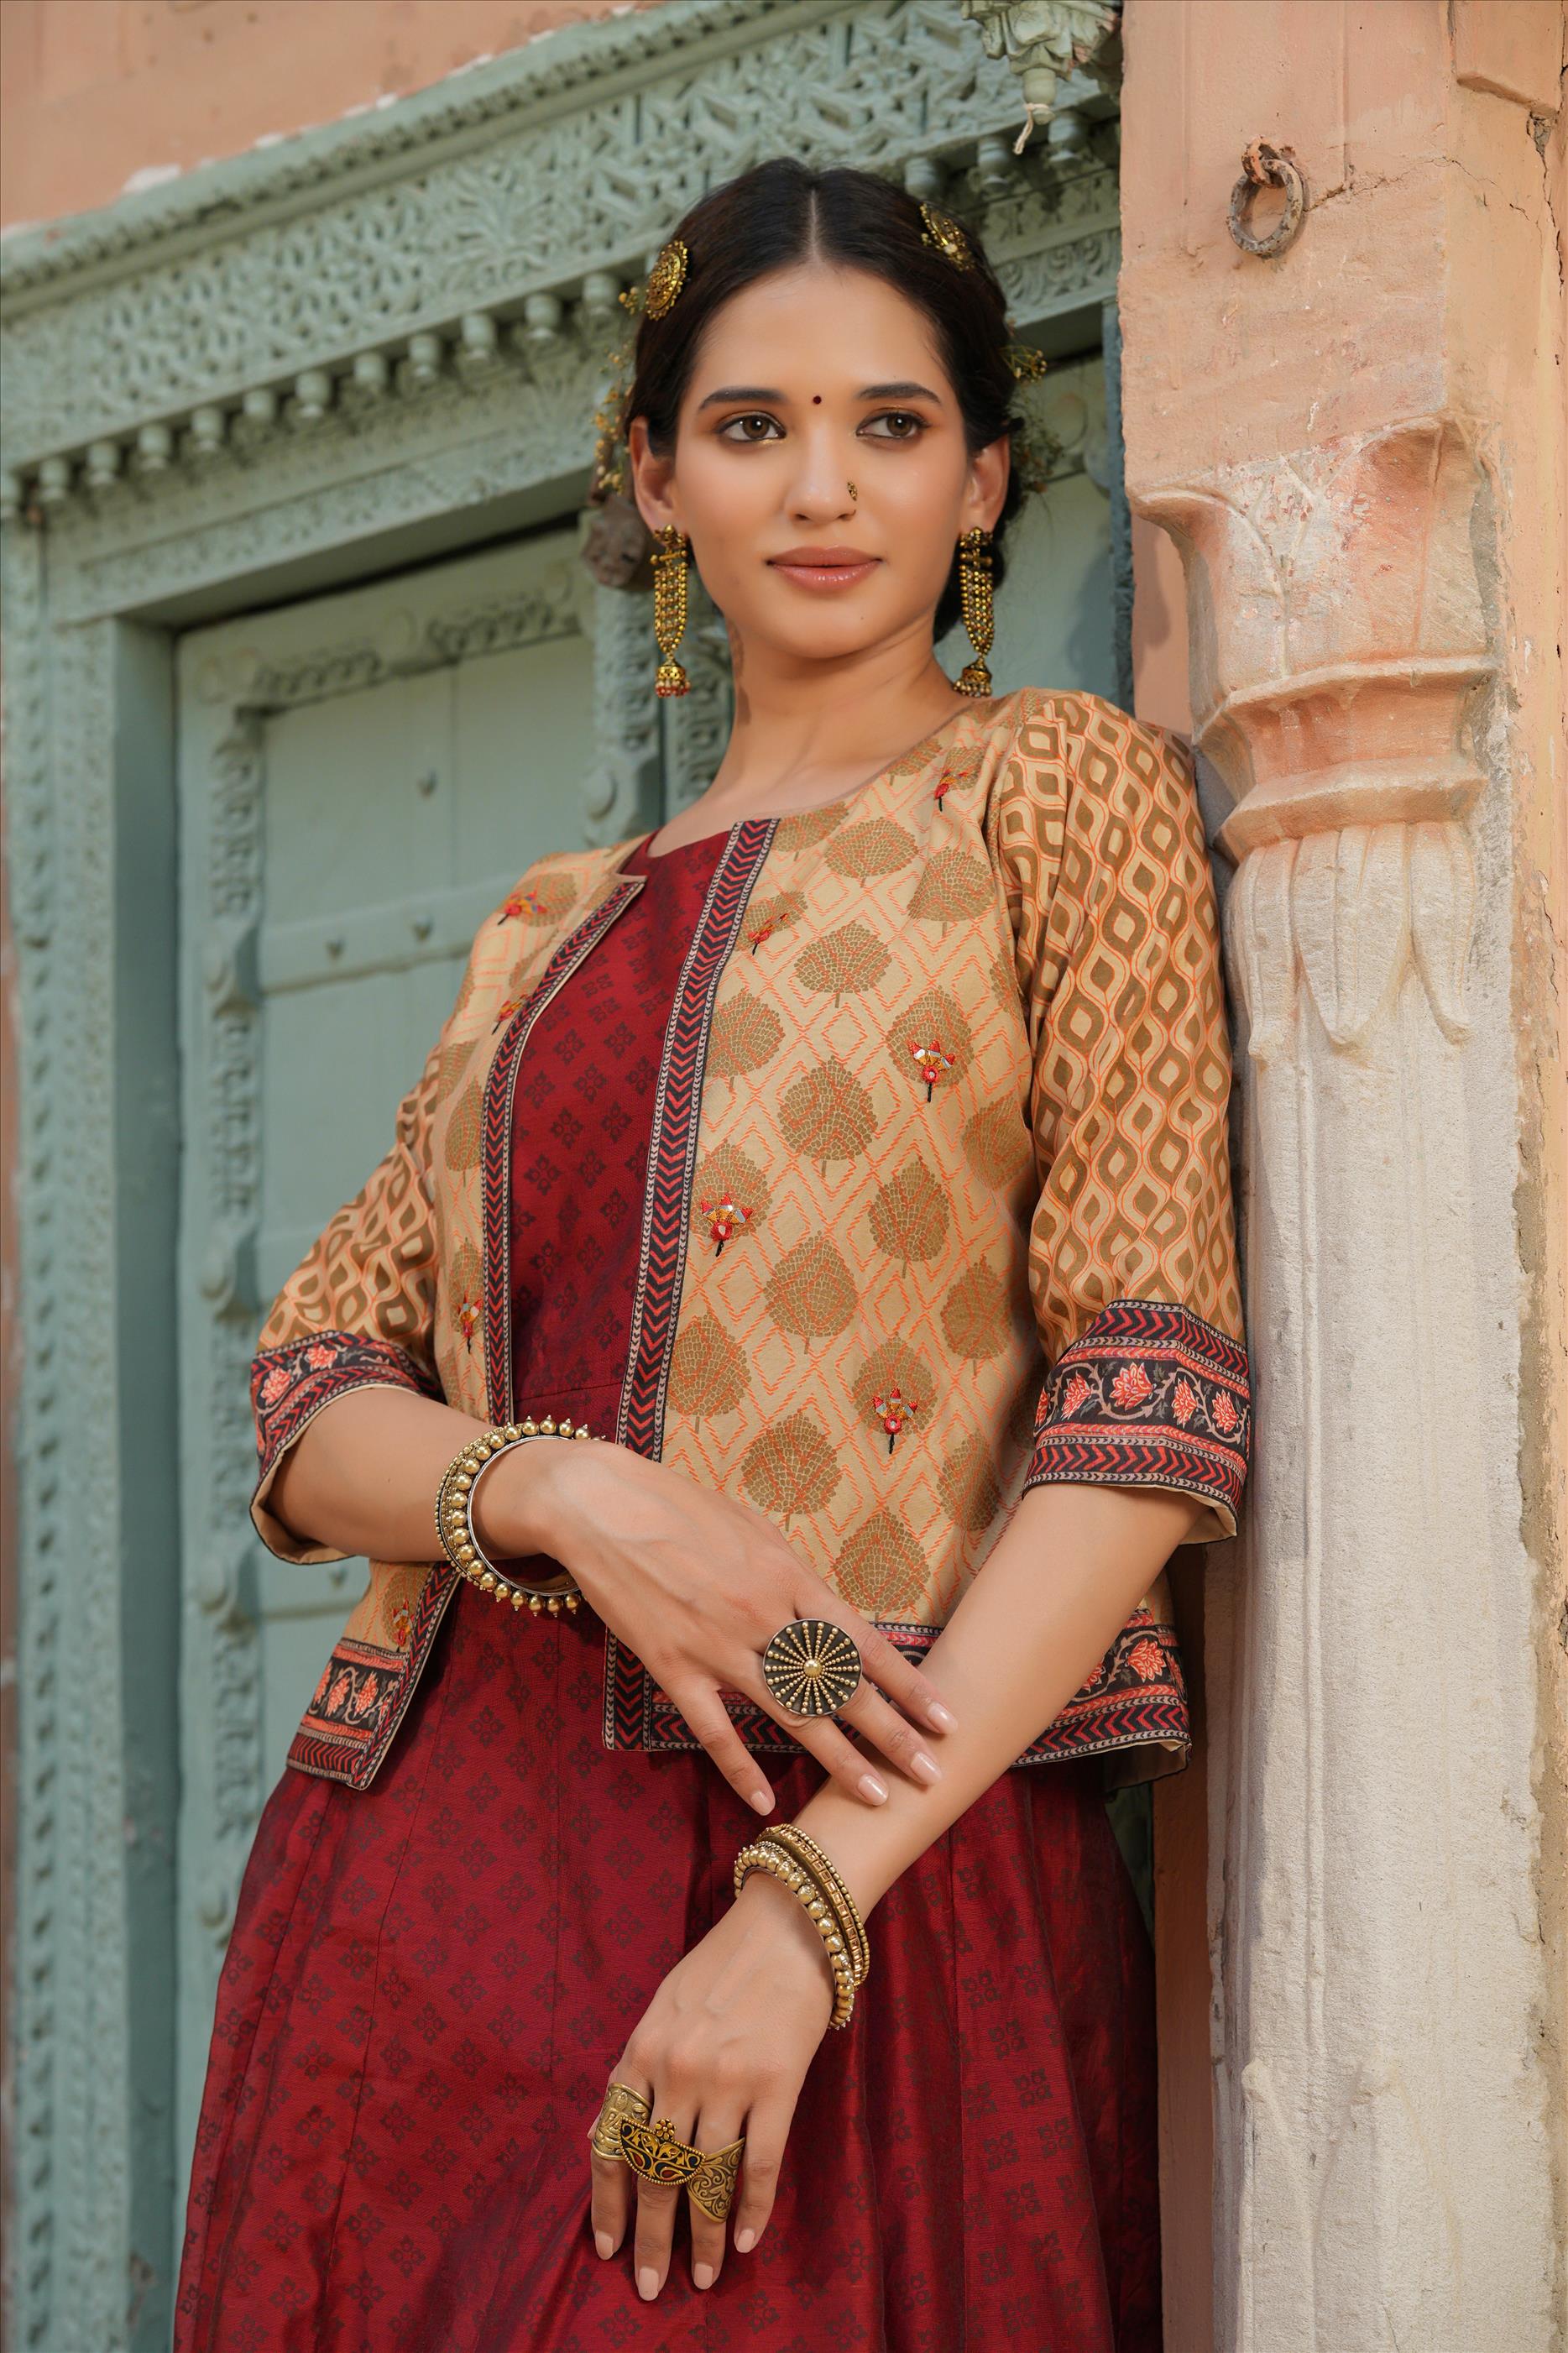 Maroon Banarasi Kora Silk Ajrakh Print Anarkali Dress With Block Printed Jacket